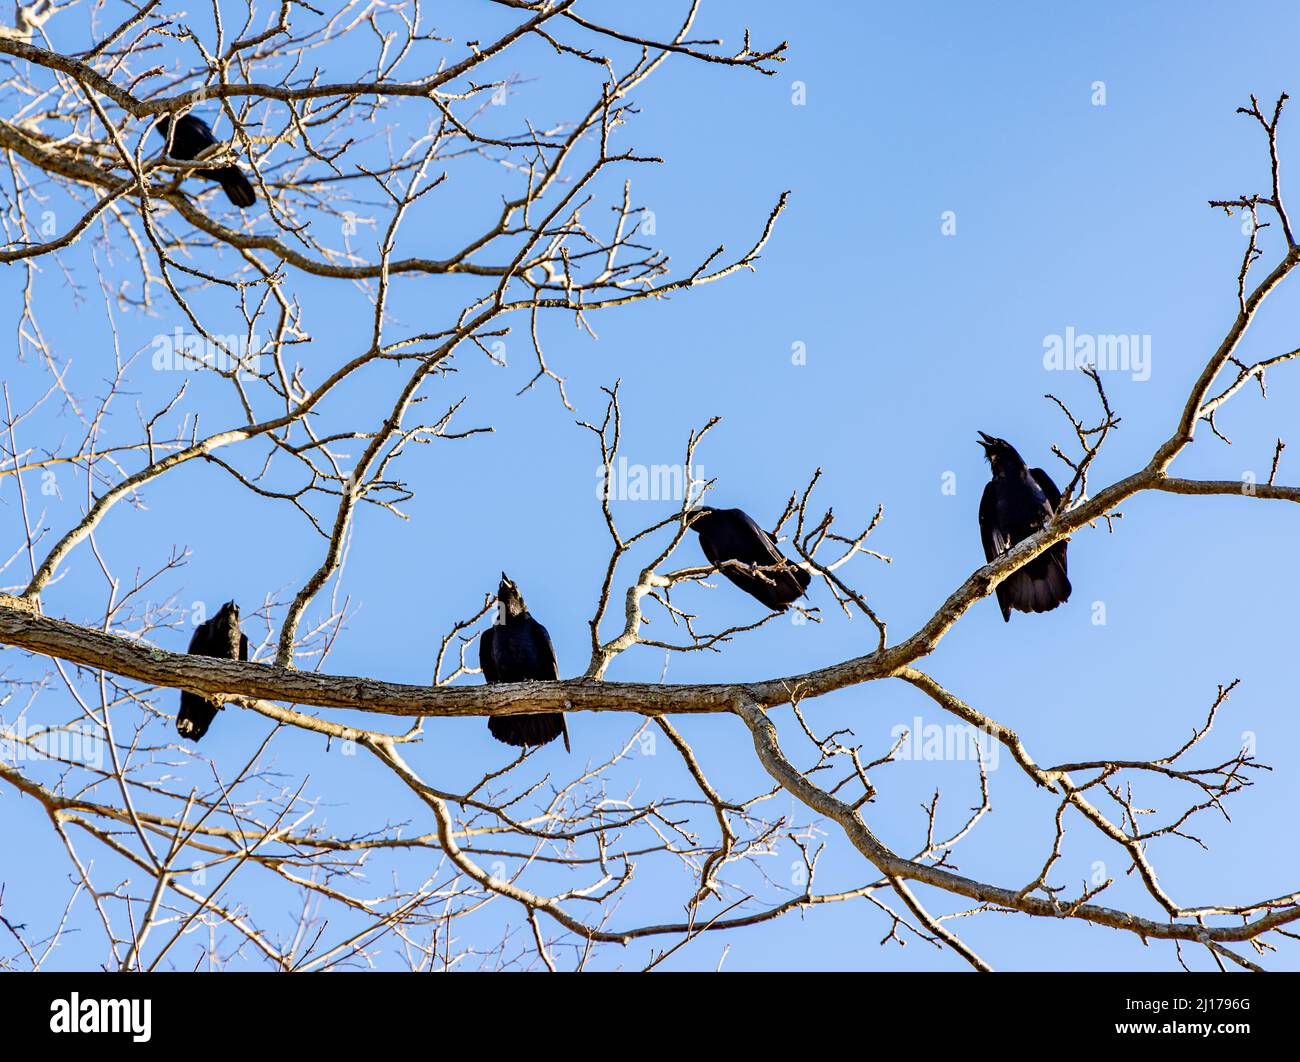 imagen detallada de cinco cuervos en una extremidad de árbol con fondo azul Foto de stock